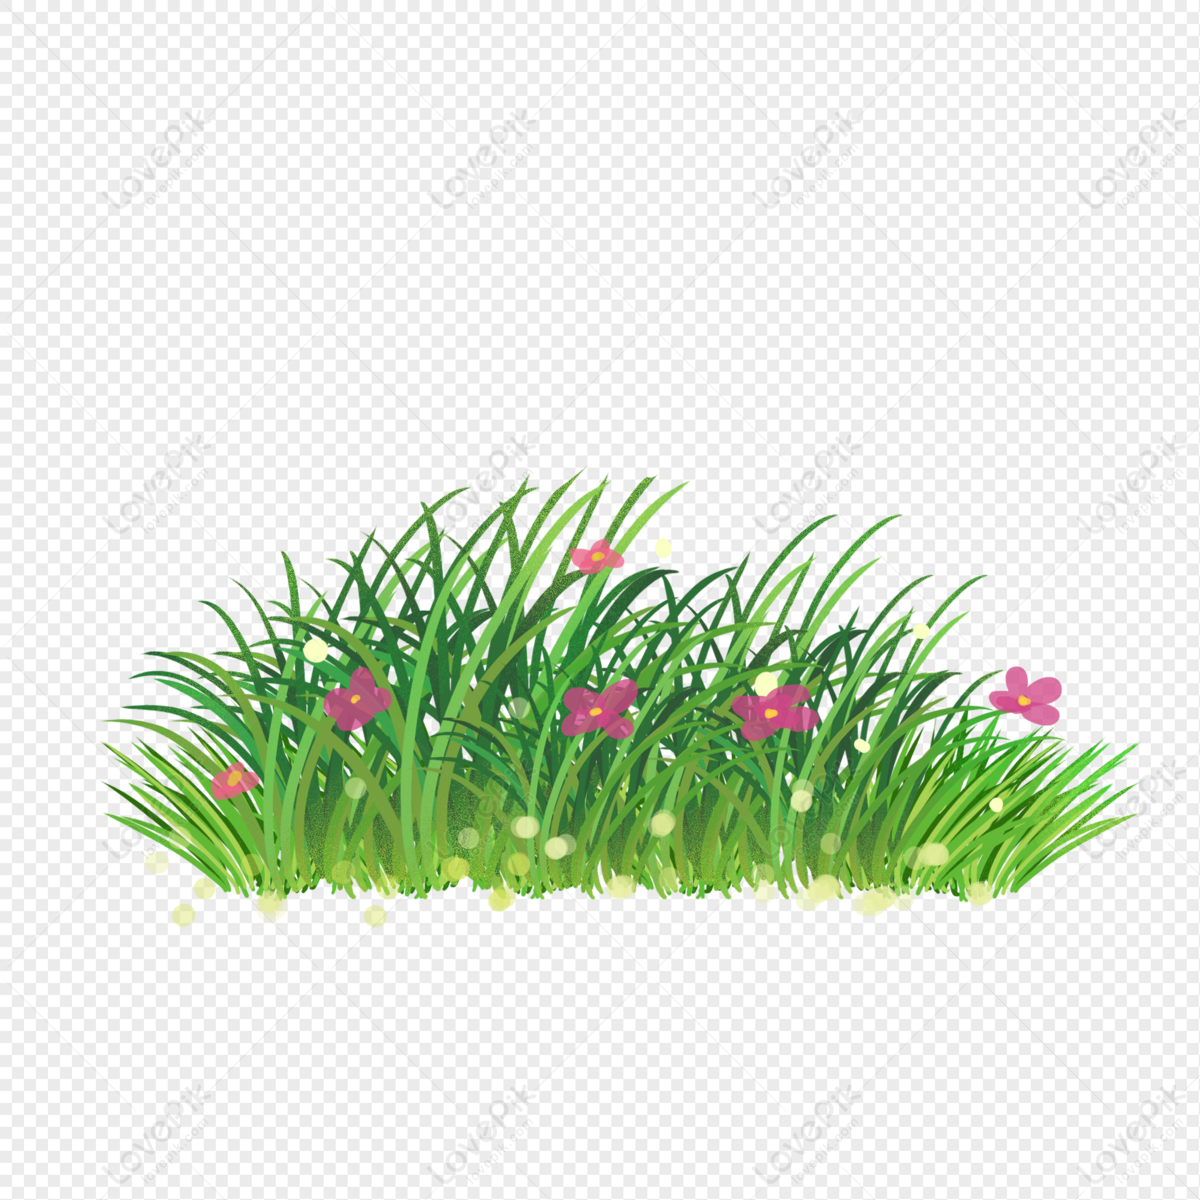 Vẽ cụm cỏ: Với những bức tranh cụm cỏ tuyệt đẹp, bạn sẽ có thêm nhiều lựa chọn để tô điểm cho không gian sống và làm việc của mình.